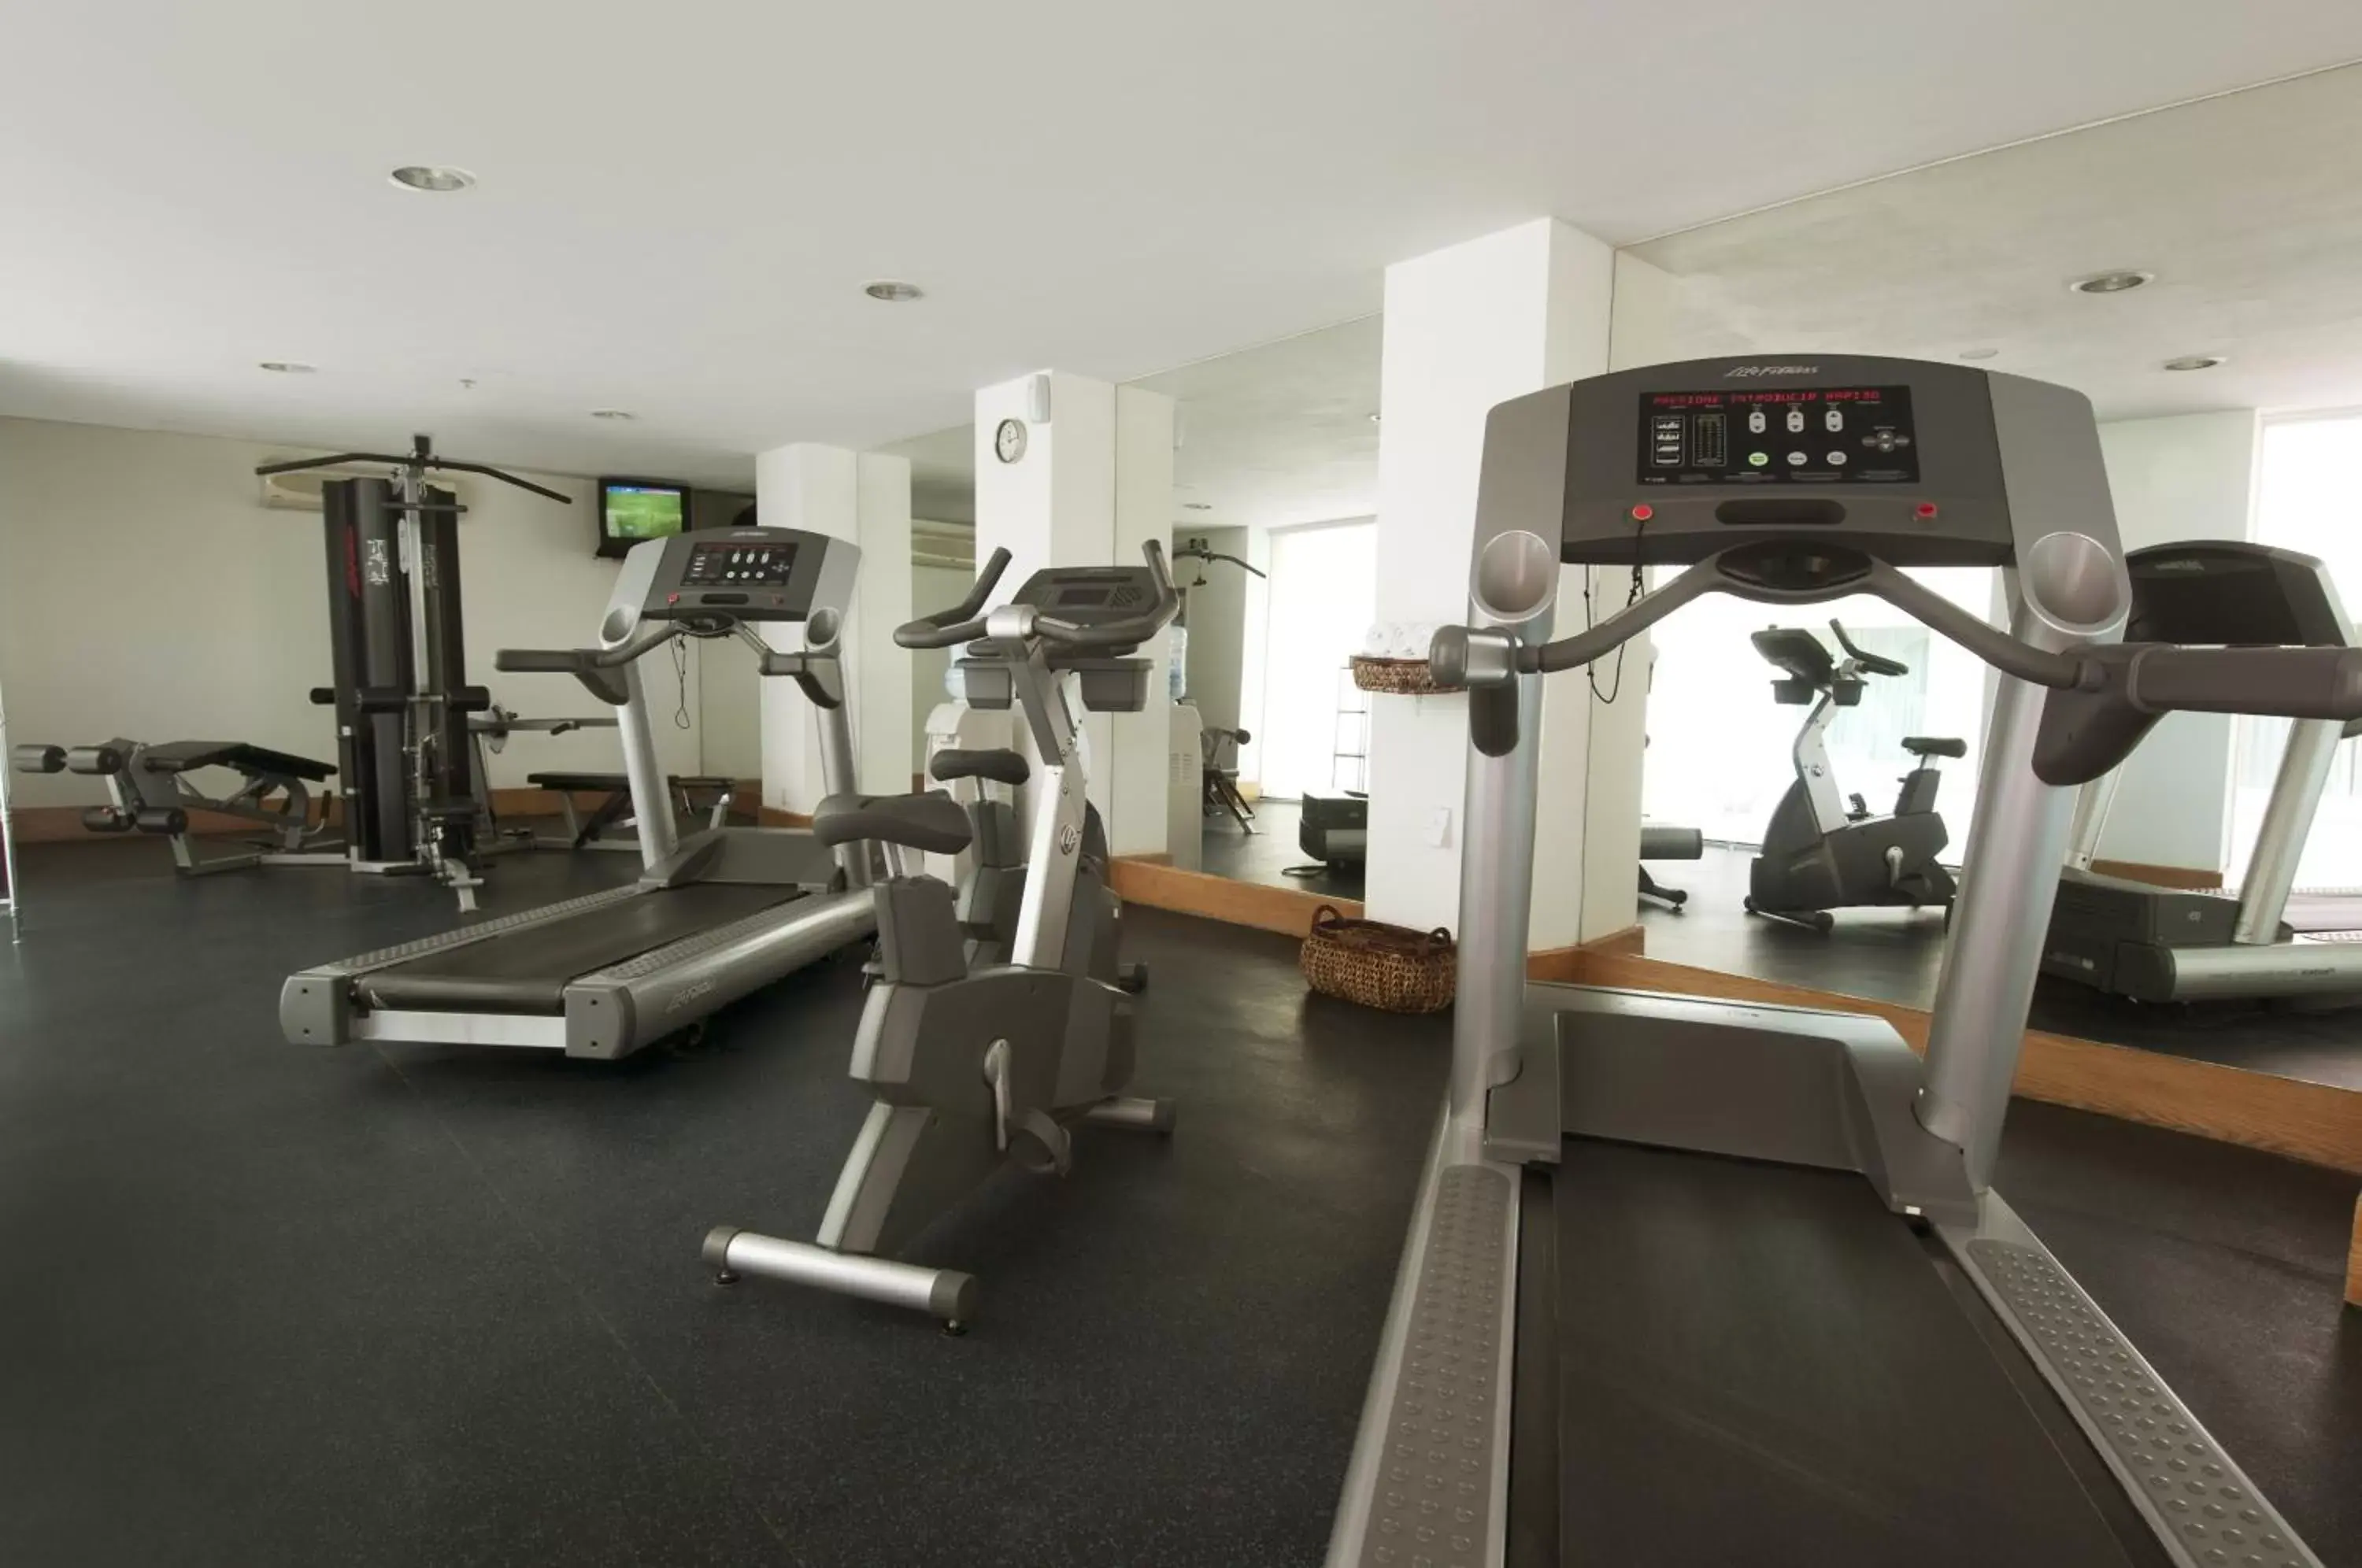 Fitness centre/facilities, Fitness Center/Facilities in Fiesta Inn Ecatepec